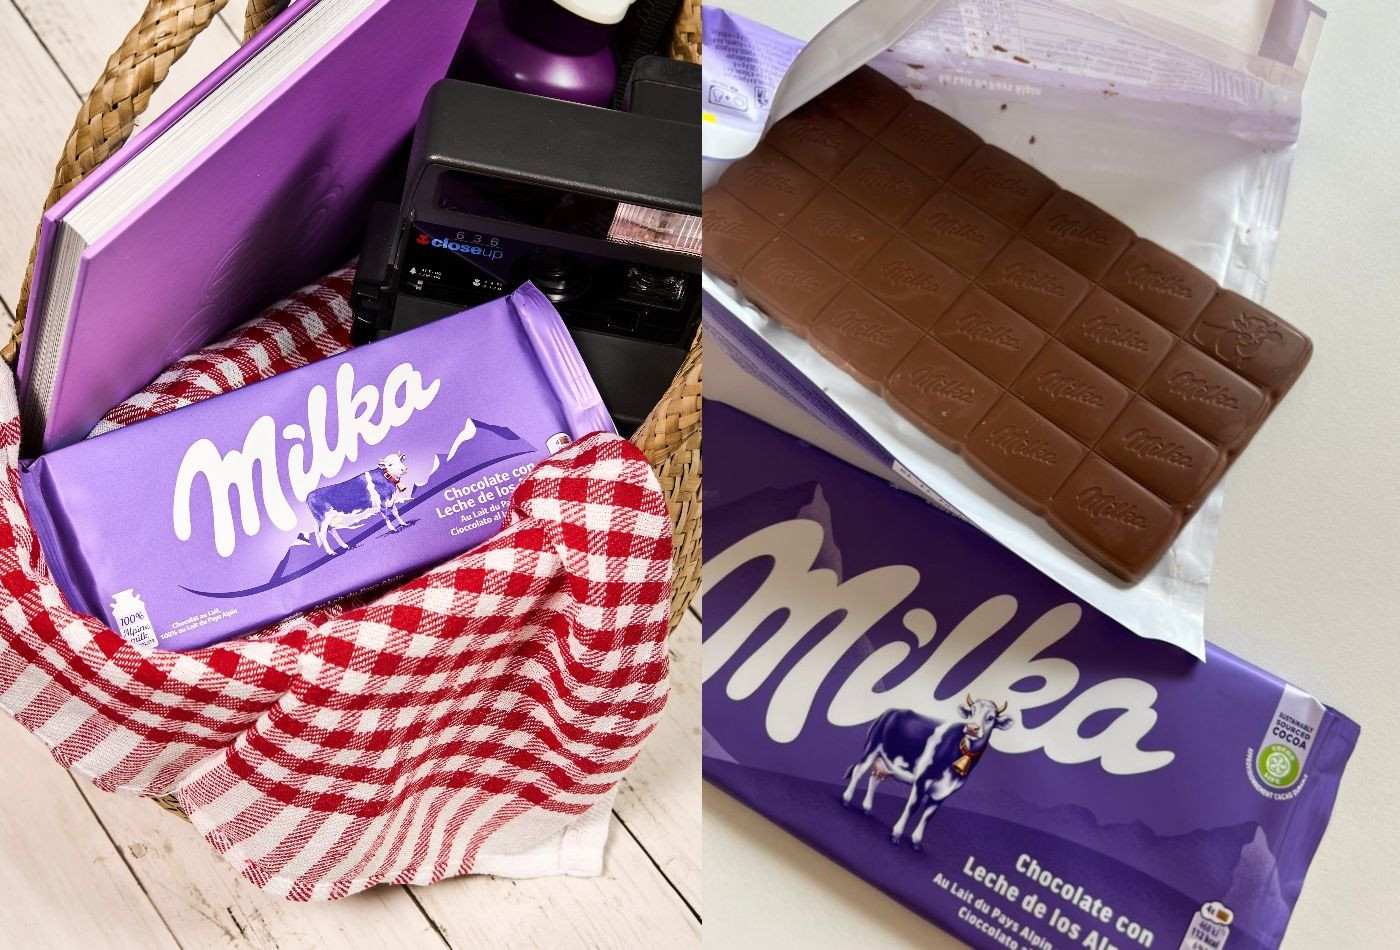 Tabletas del nuevo chocolate Milka, que la marca regala esta semana en Barcelona / MILKA